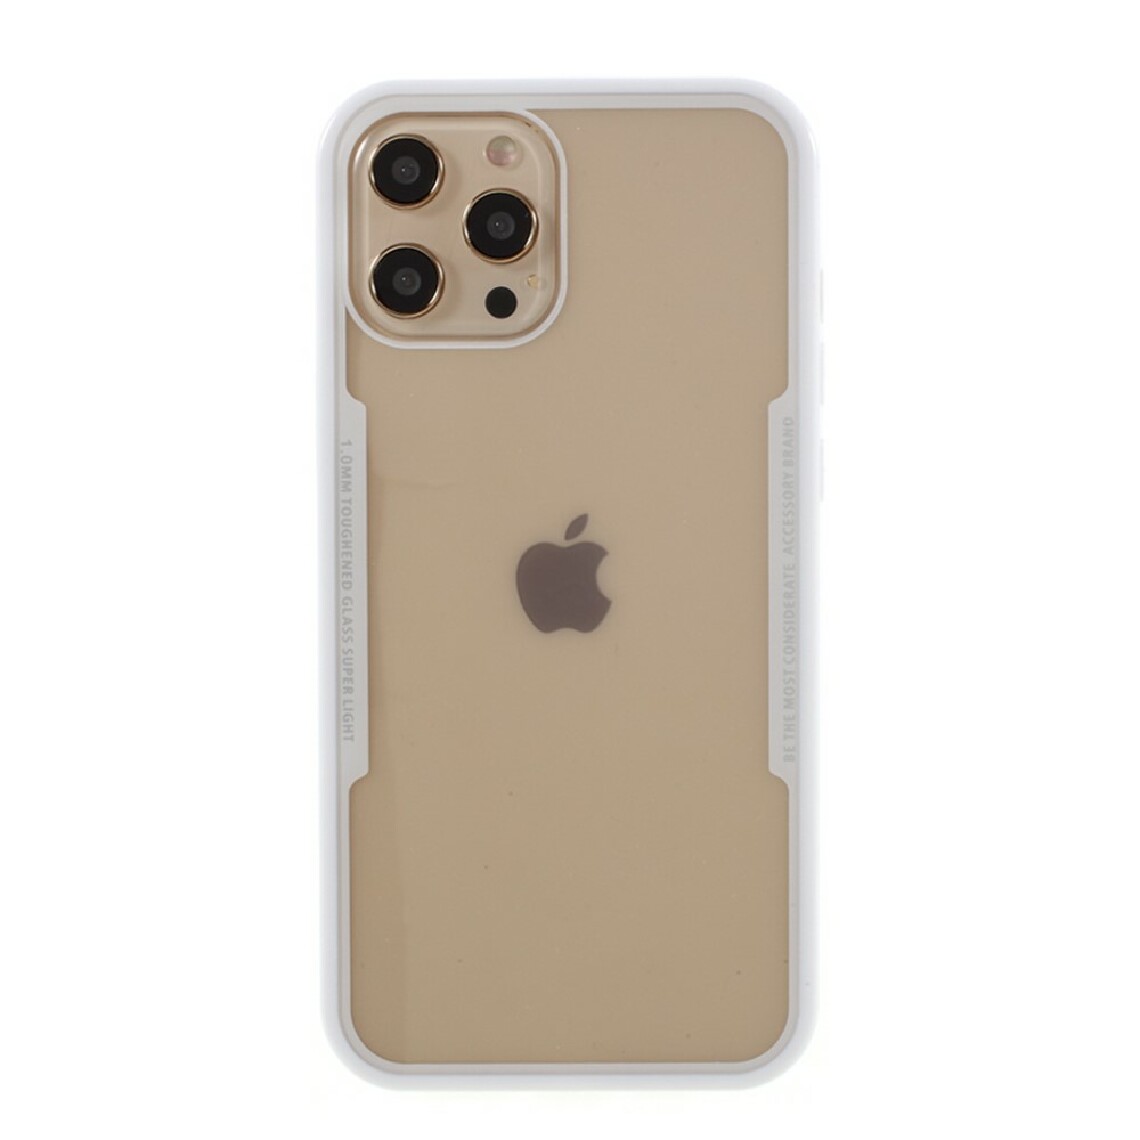 Other - Coque en silicone + acrylique cadre clair combo hybride blanc pour votre Apple iPhone 12/12 Pro - Coque, étui smartphone